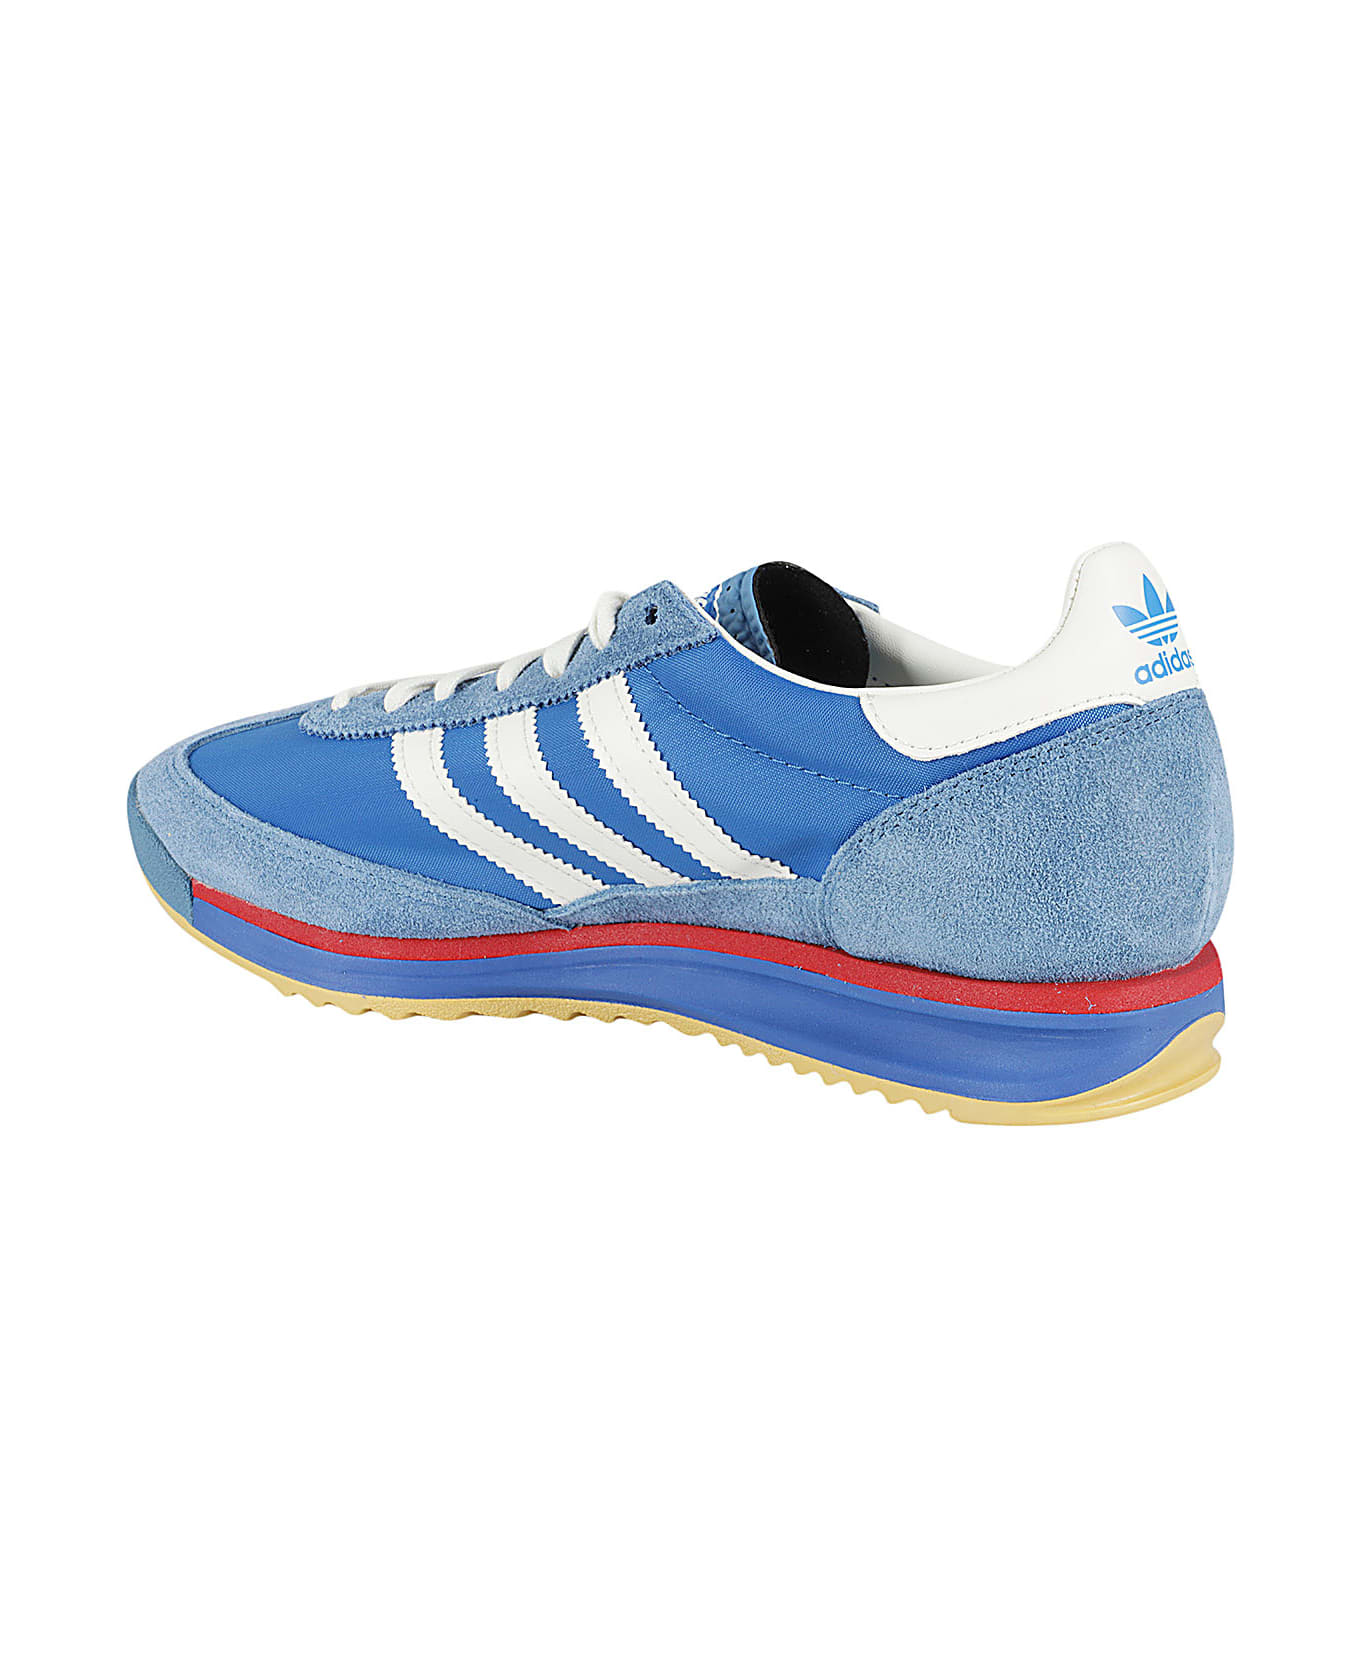 Adidas Originals Sl 72 Rs - Blue